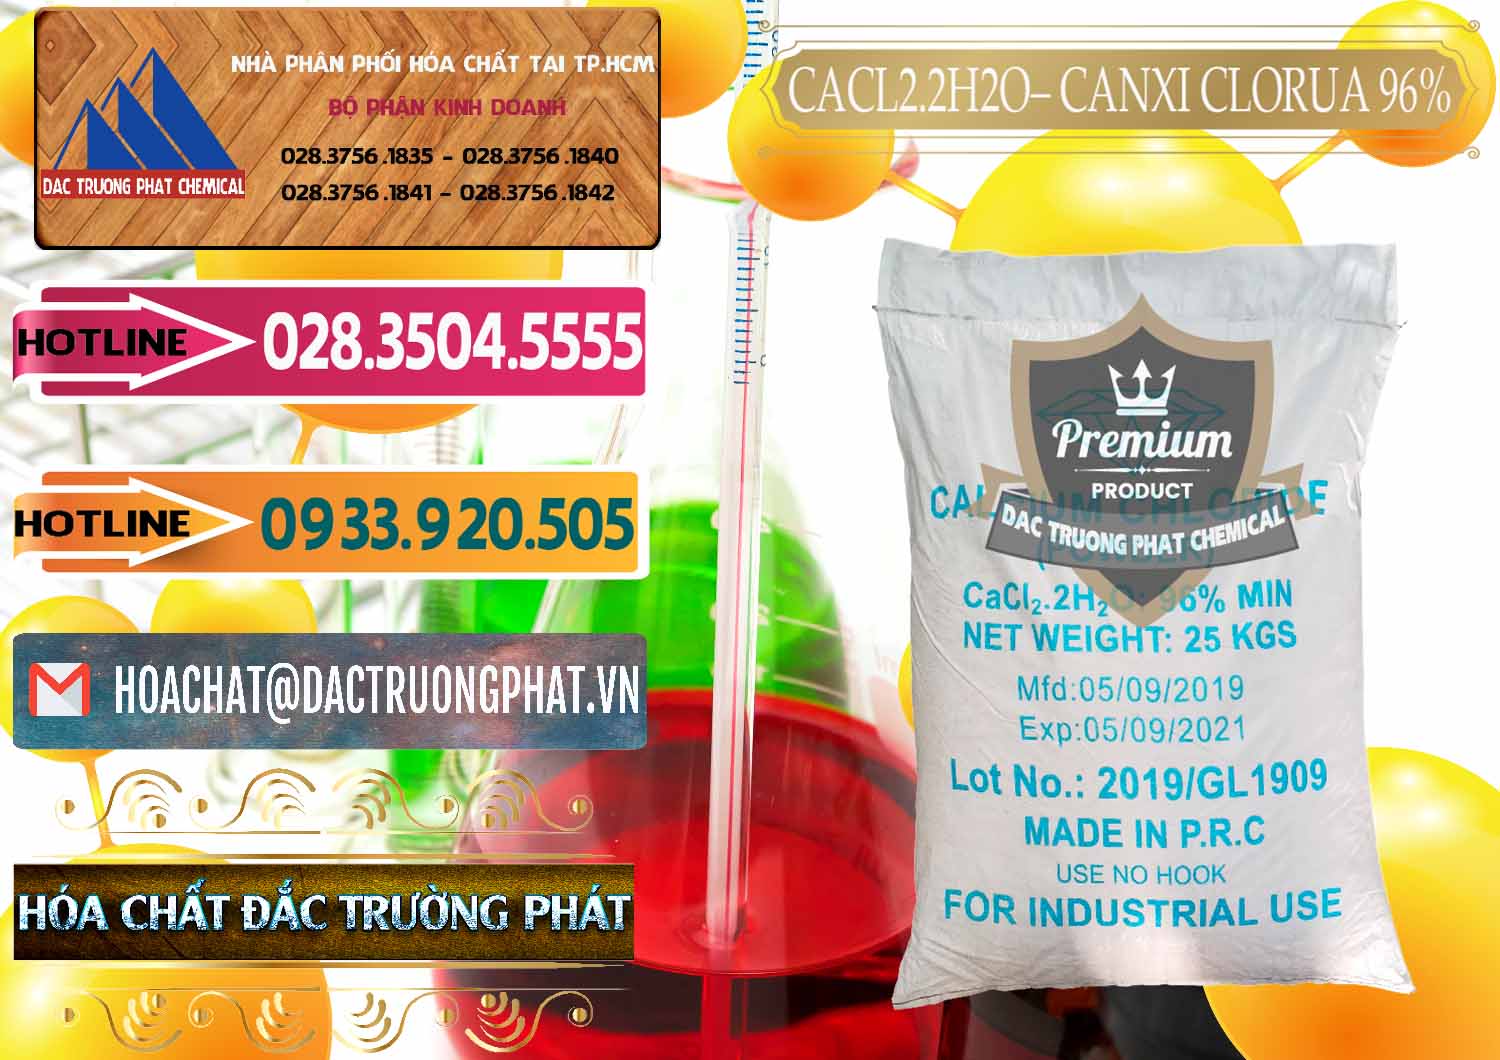 Đơn vị cung cấp & bán CaCl2 – Canxi Clorua 96% Logo Kim Cương Trung Quốc China - 0040 - Cty chuyên bán & phân phối hóa chất tại TP.HCM - dactruongphat.vn